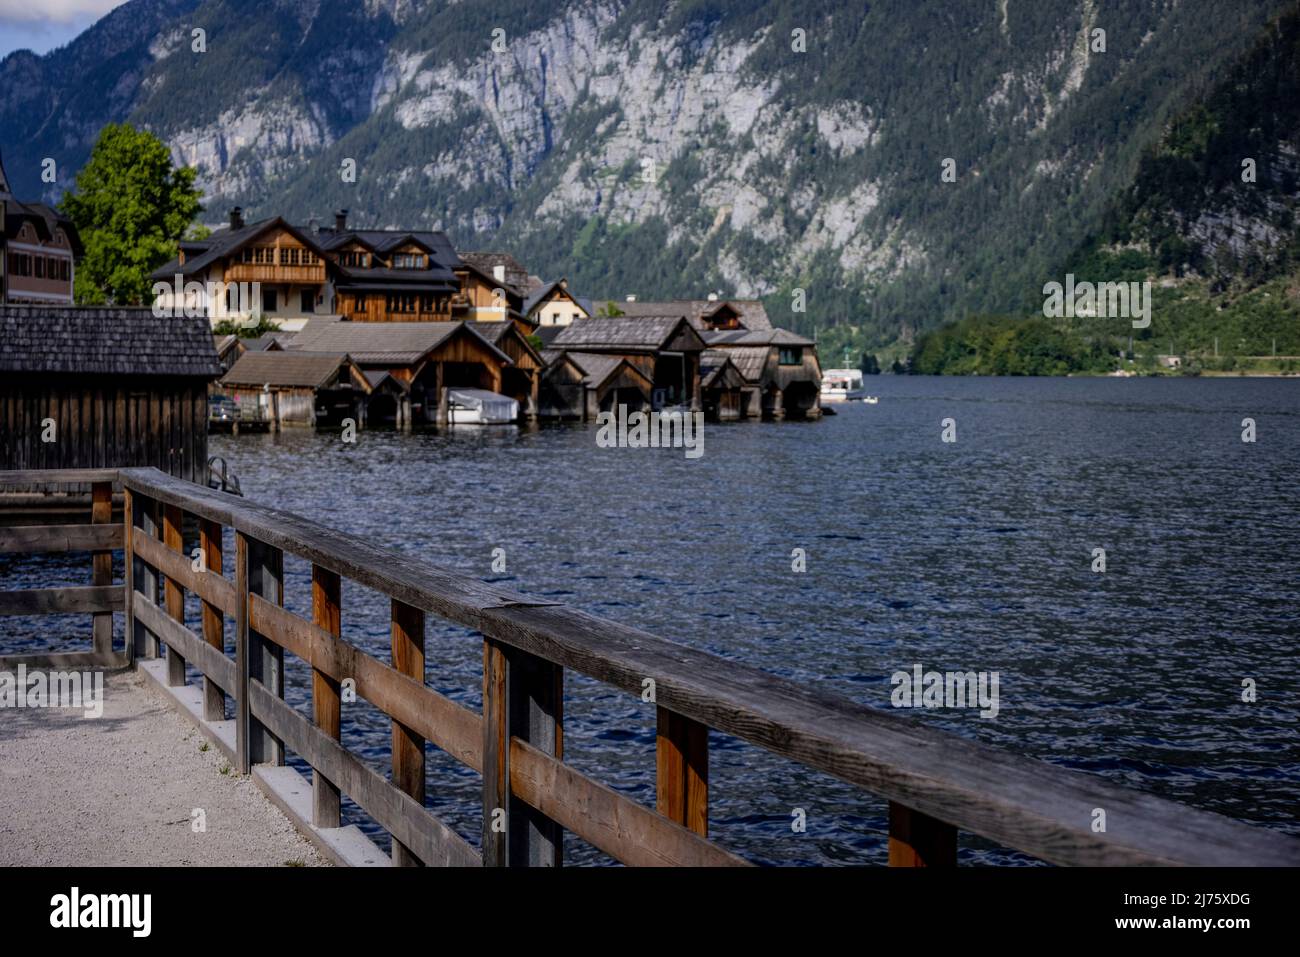 Famoso villaggio di Hallstatt in Austria, un sito patrimonio mondiale, Foto Stock